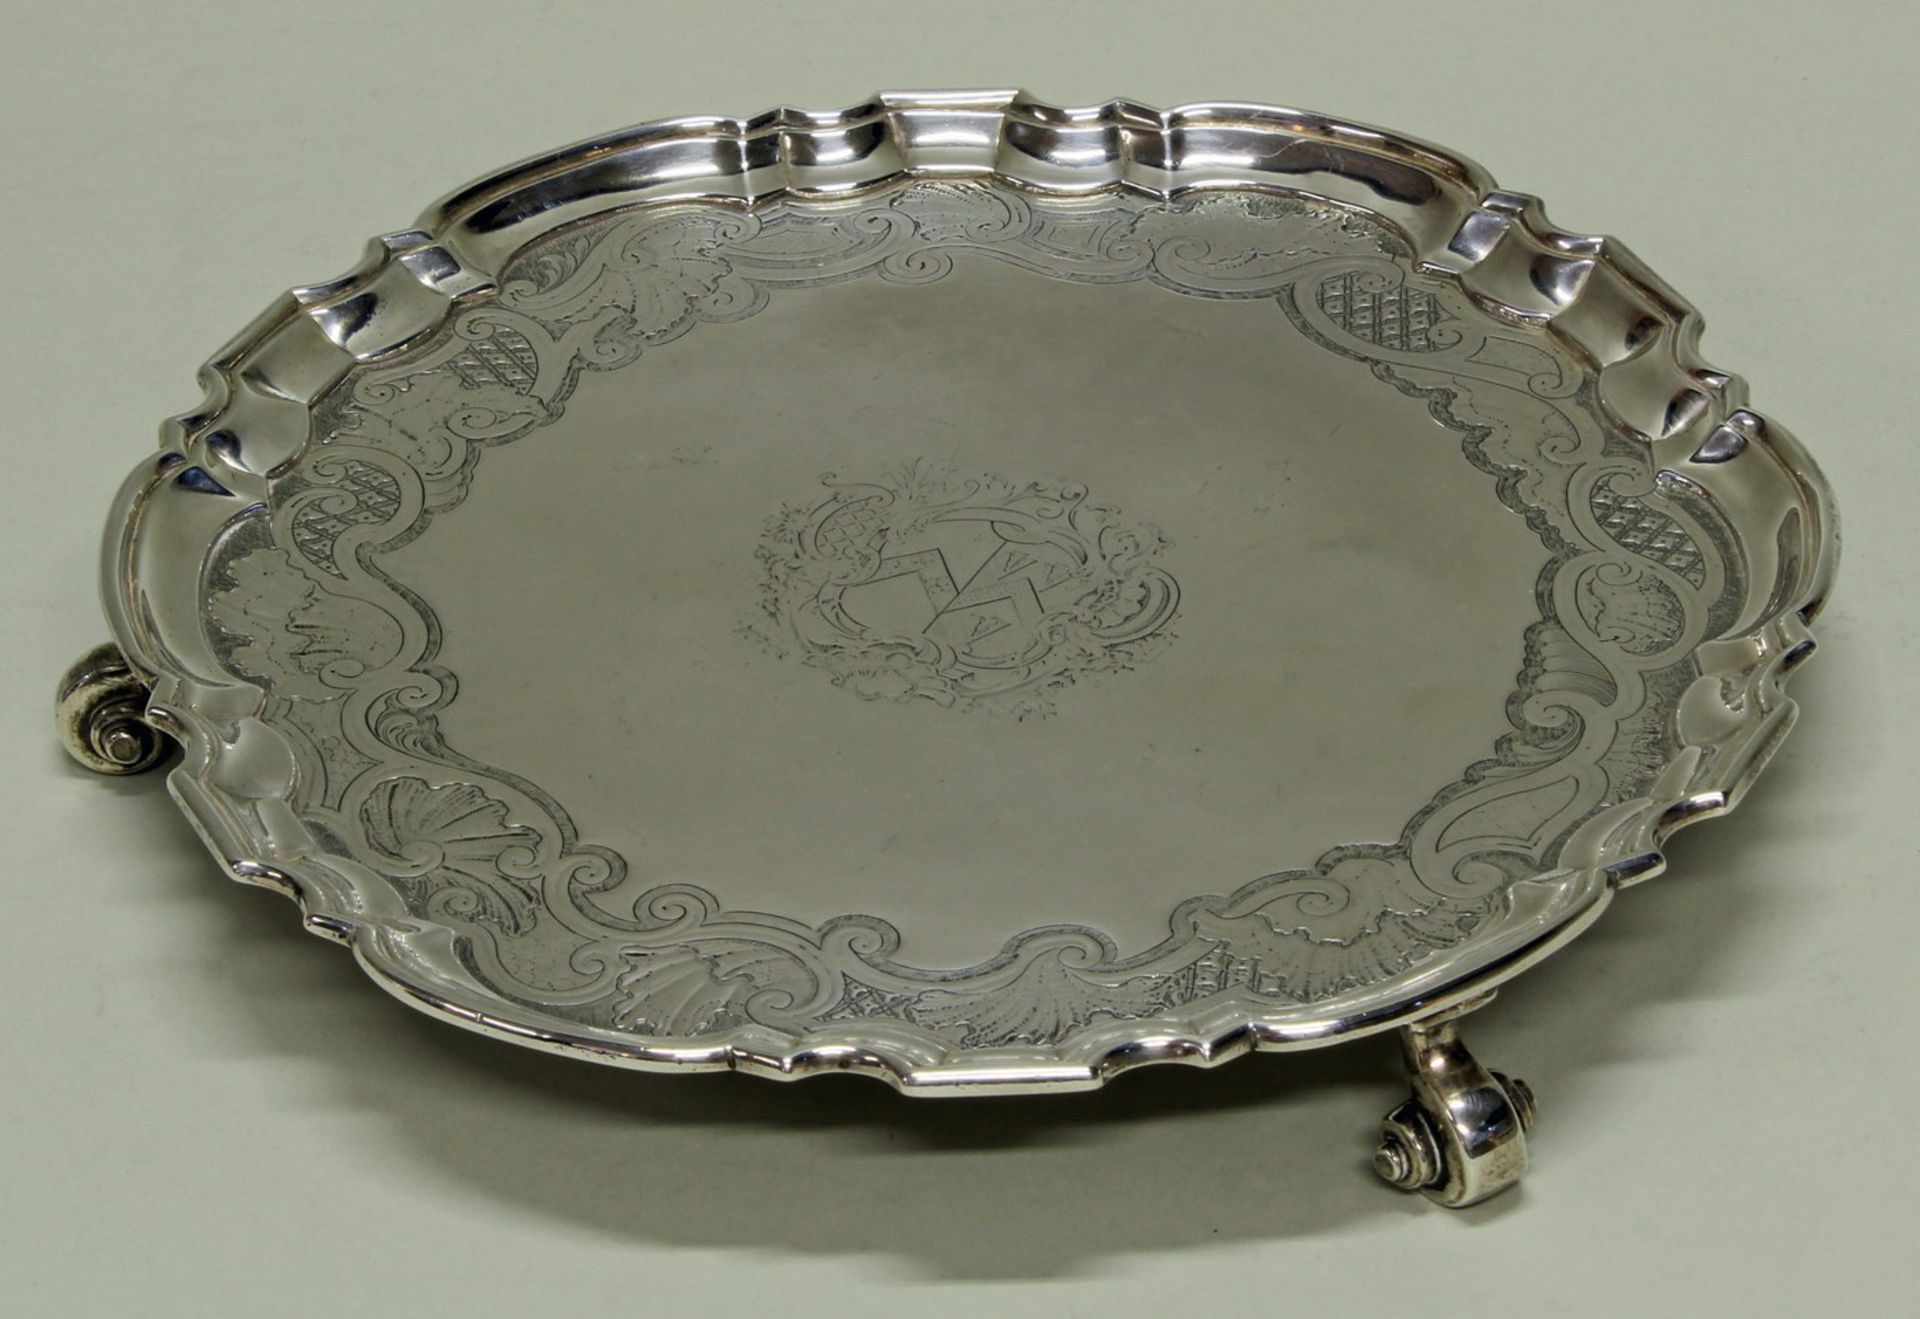 Salver, Silber 925, London, 1750, Meistermarke, Spiegel mit rocaillierter Zier und graviertem